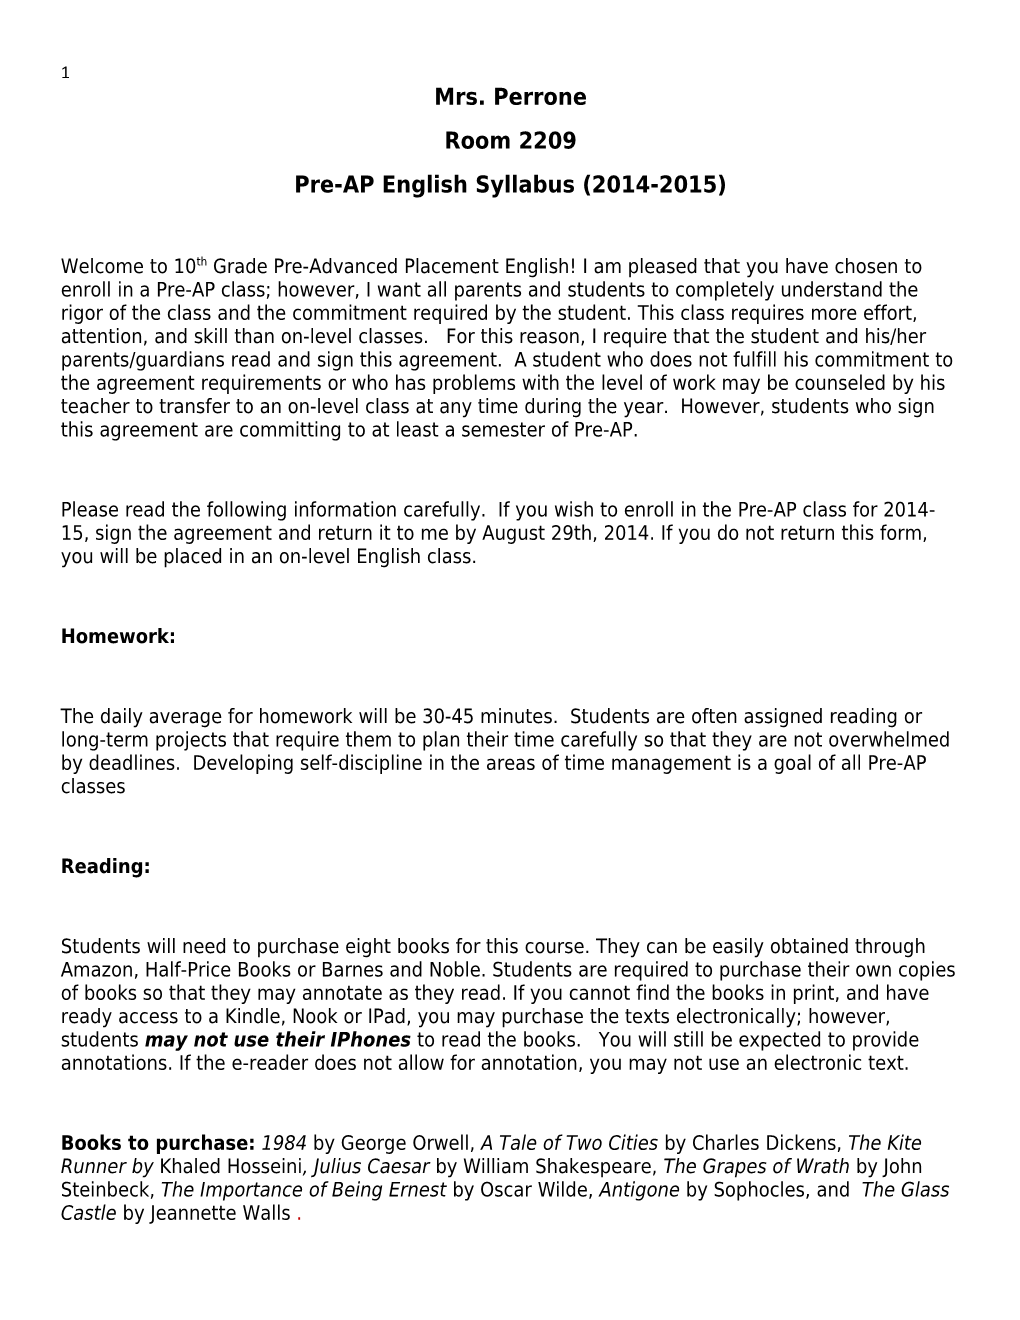 Pre-AP English Syllabus (2014-2015)